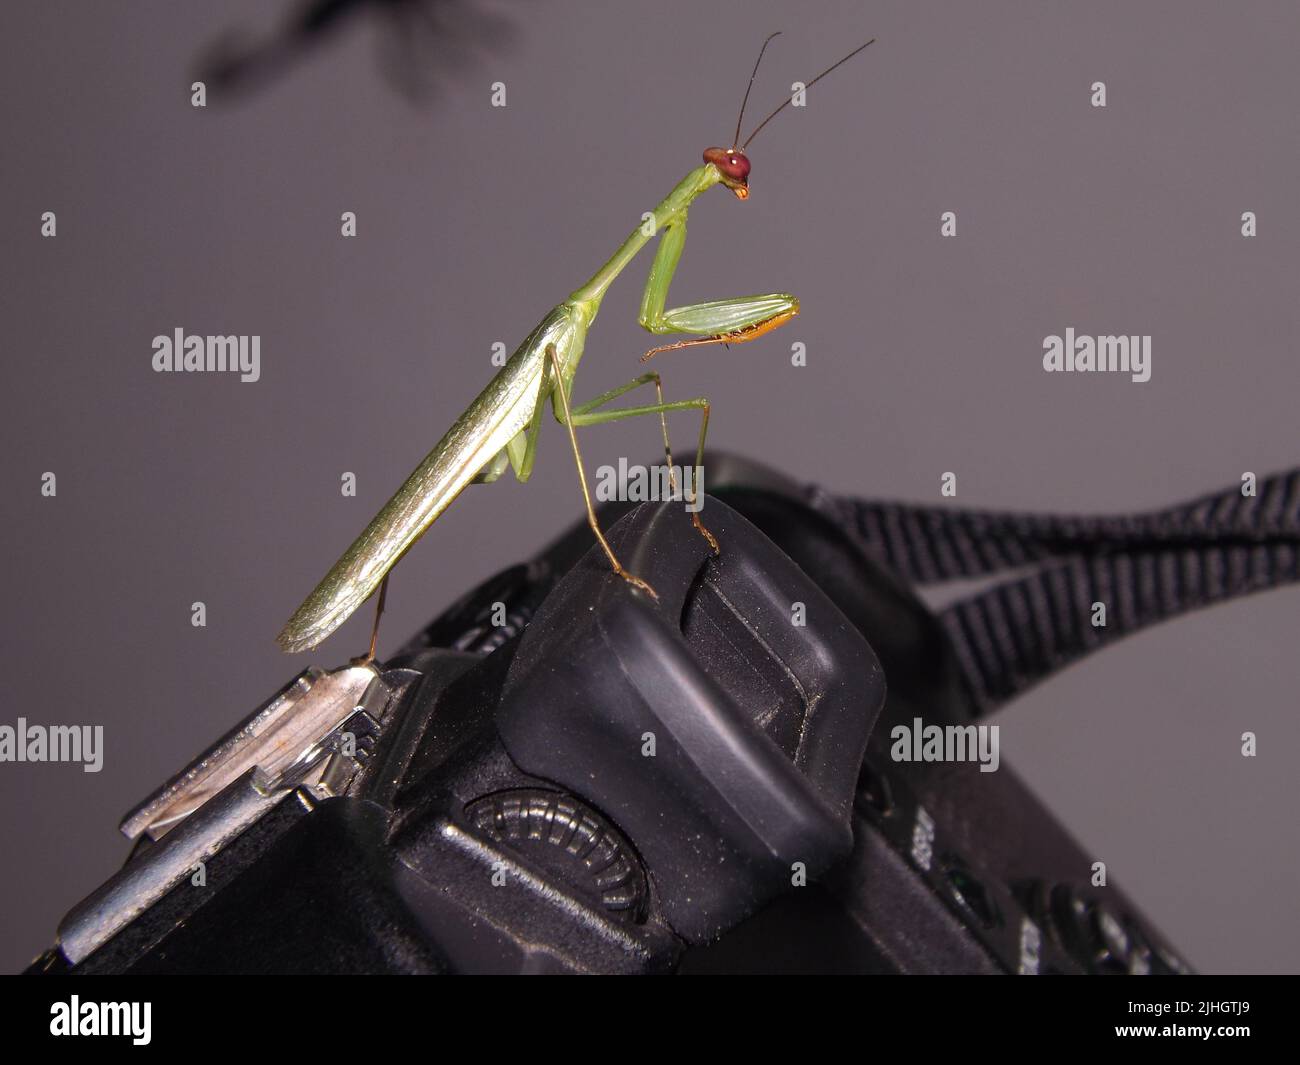 Zahlende Mantis (Callimantis-Spezies) mit roten Augen auf dem Sucher einer Kamera, isoliert auf einem natürlichen grauen Hintergrund Stockfoto